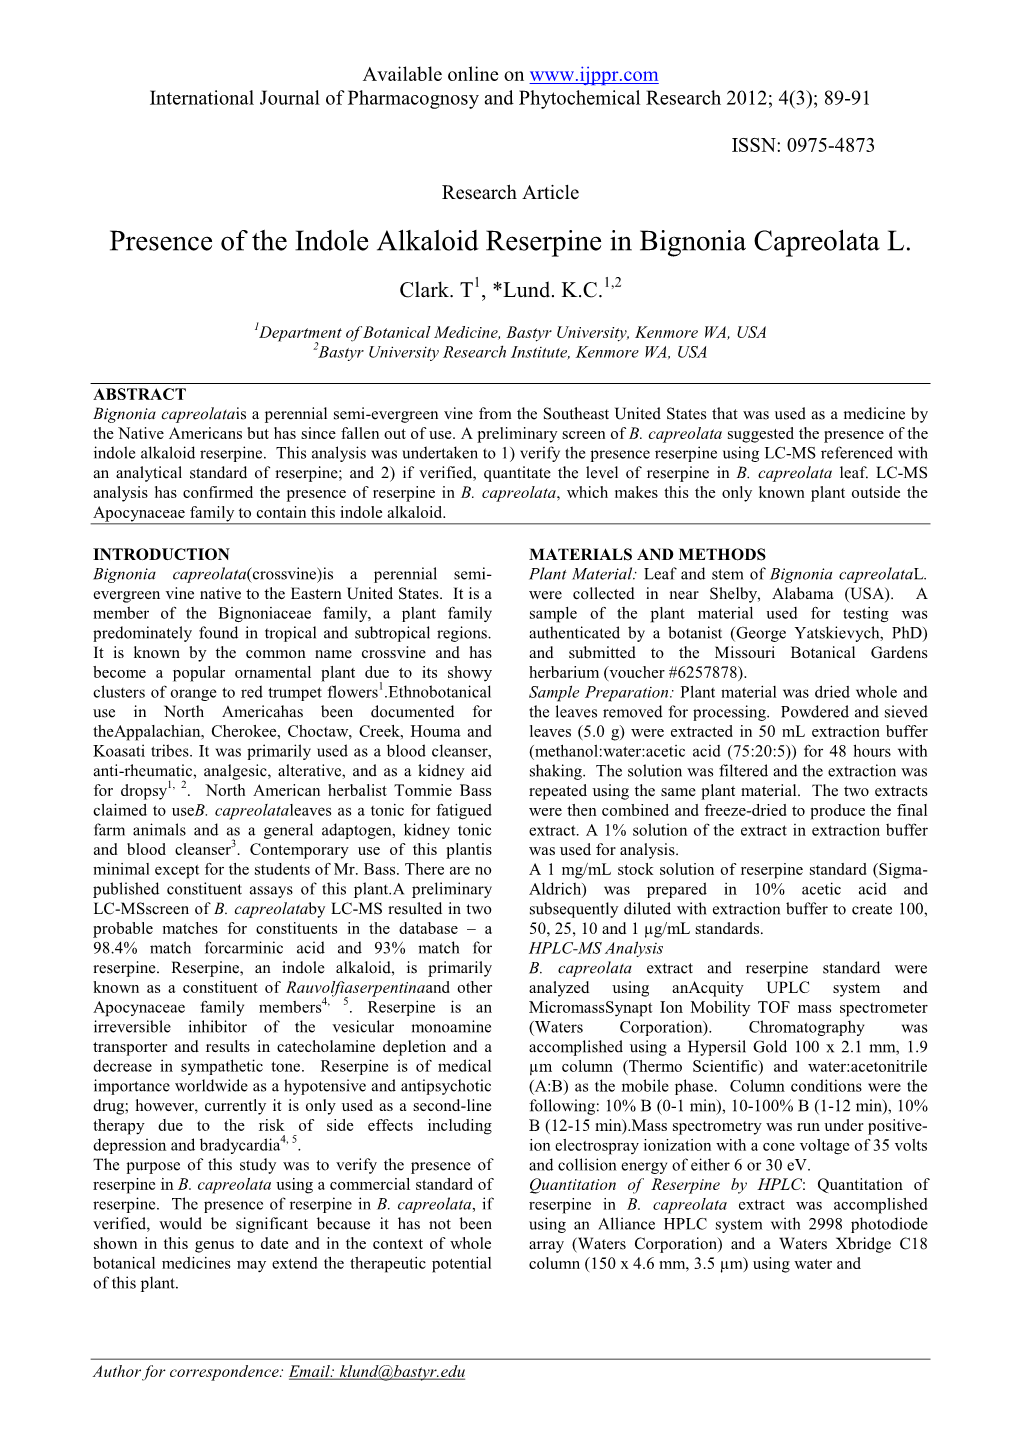 Presence of the Indole Alkaloid Reserpine in Bignonia Capreolata L